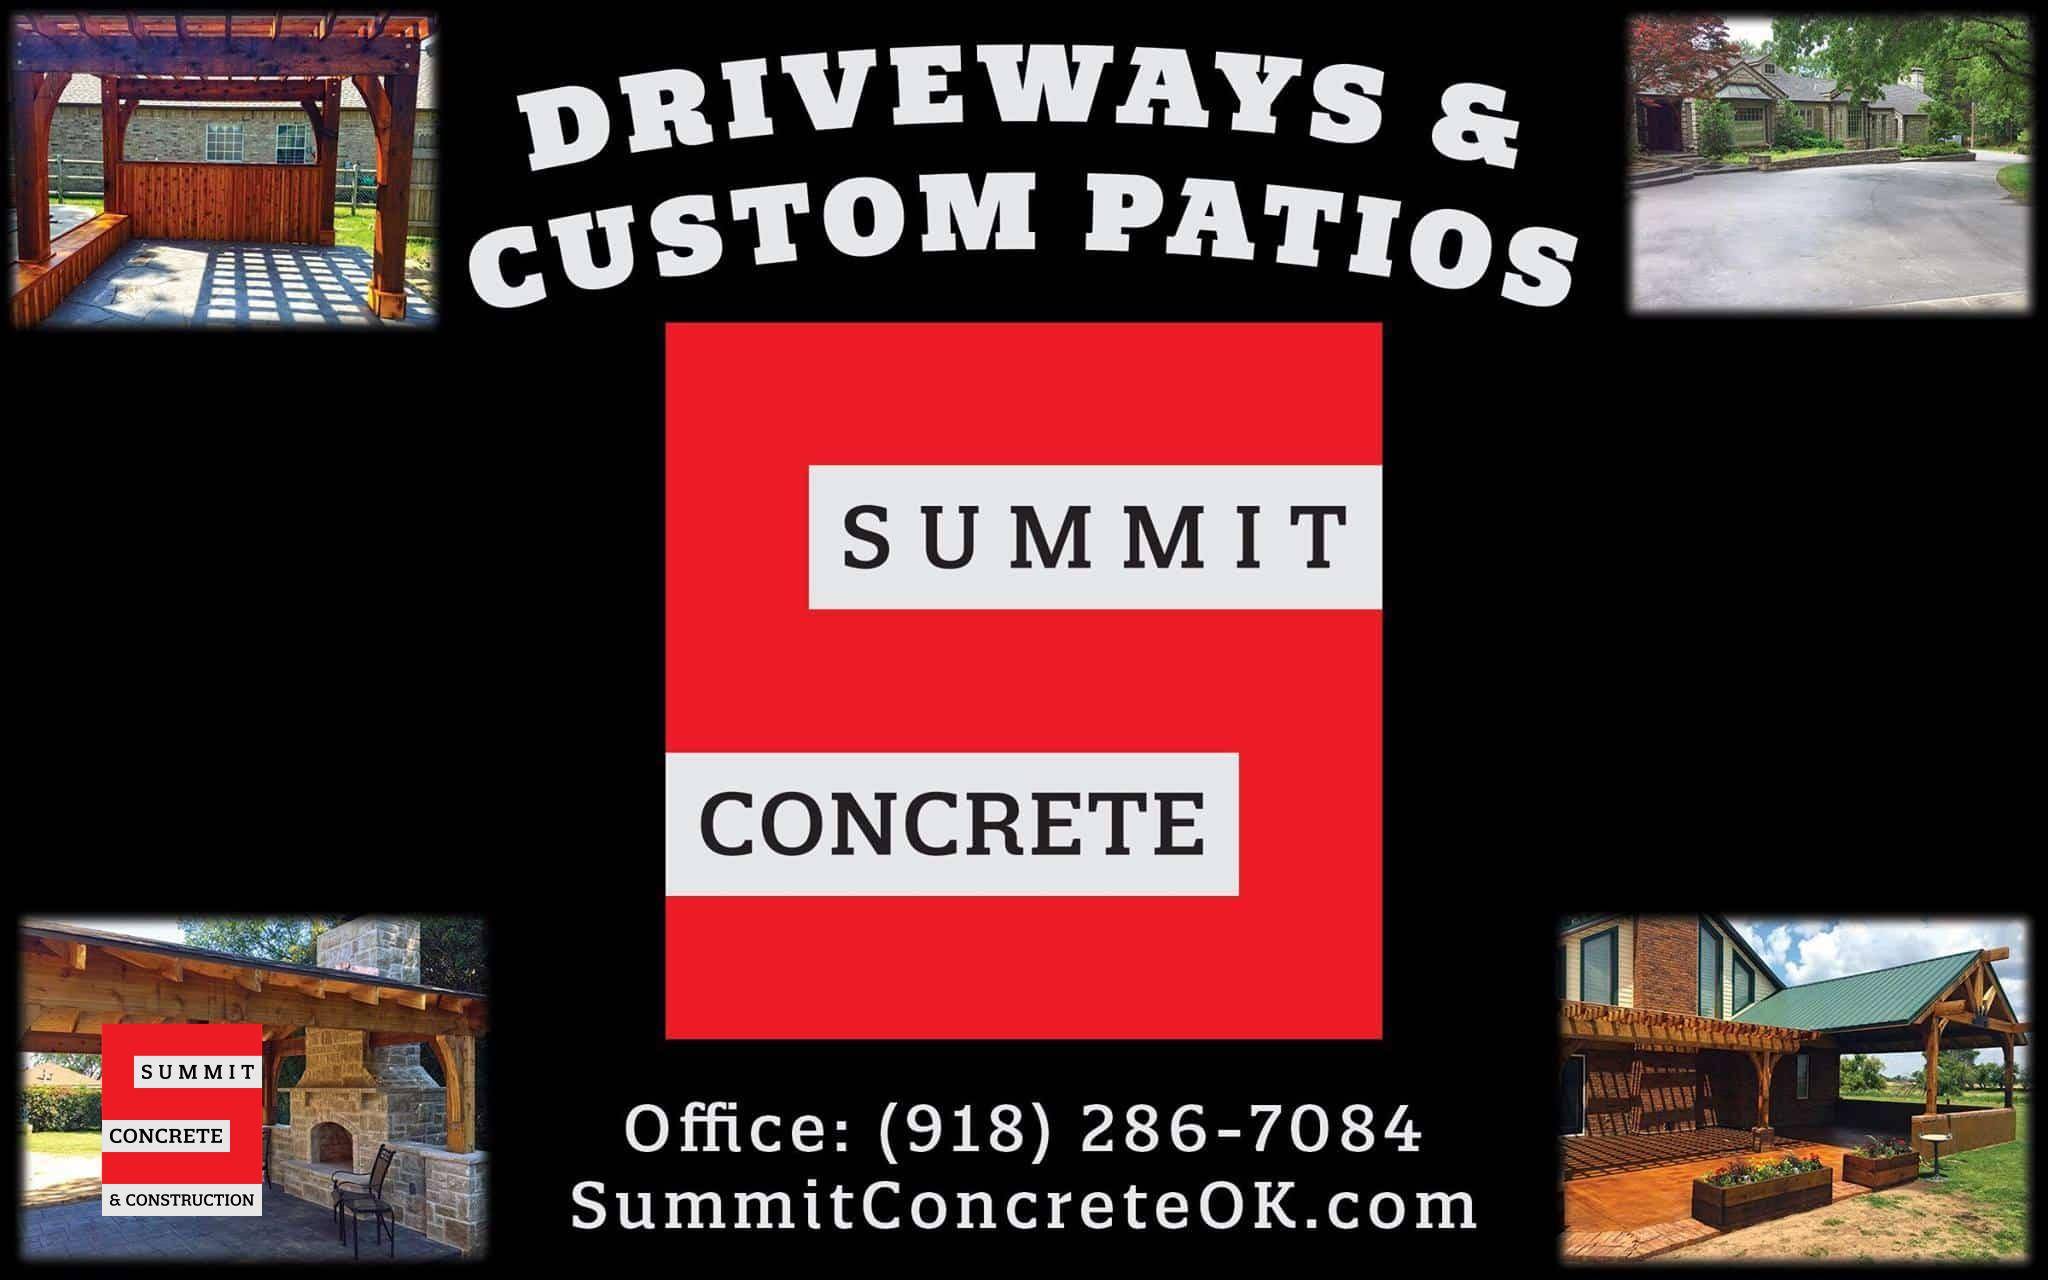 Summit Concrete & Construction logo pics banner